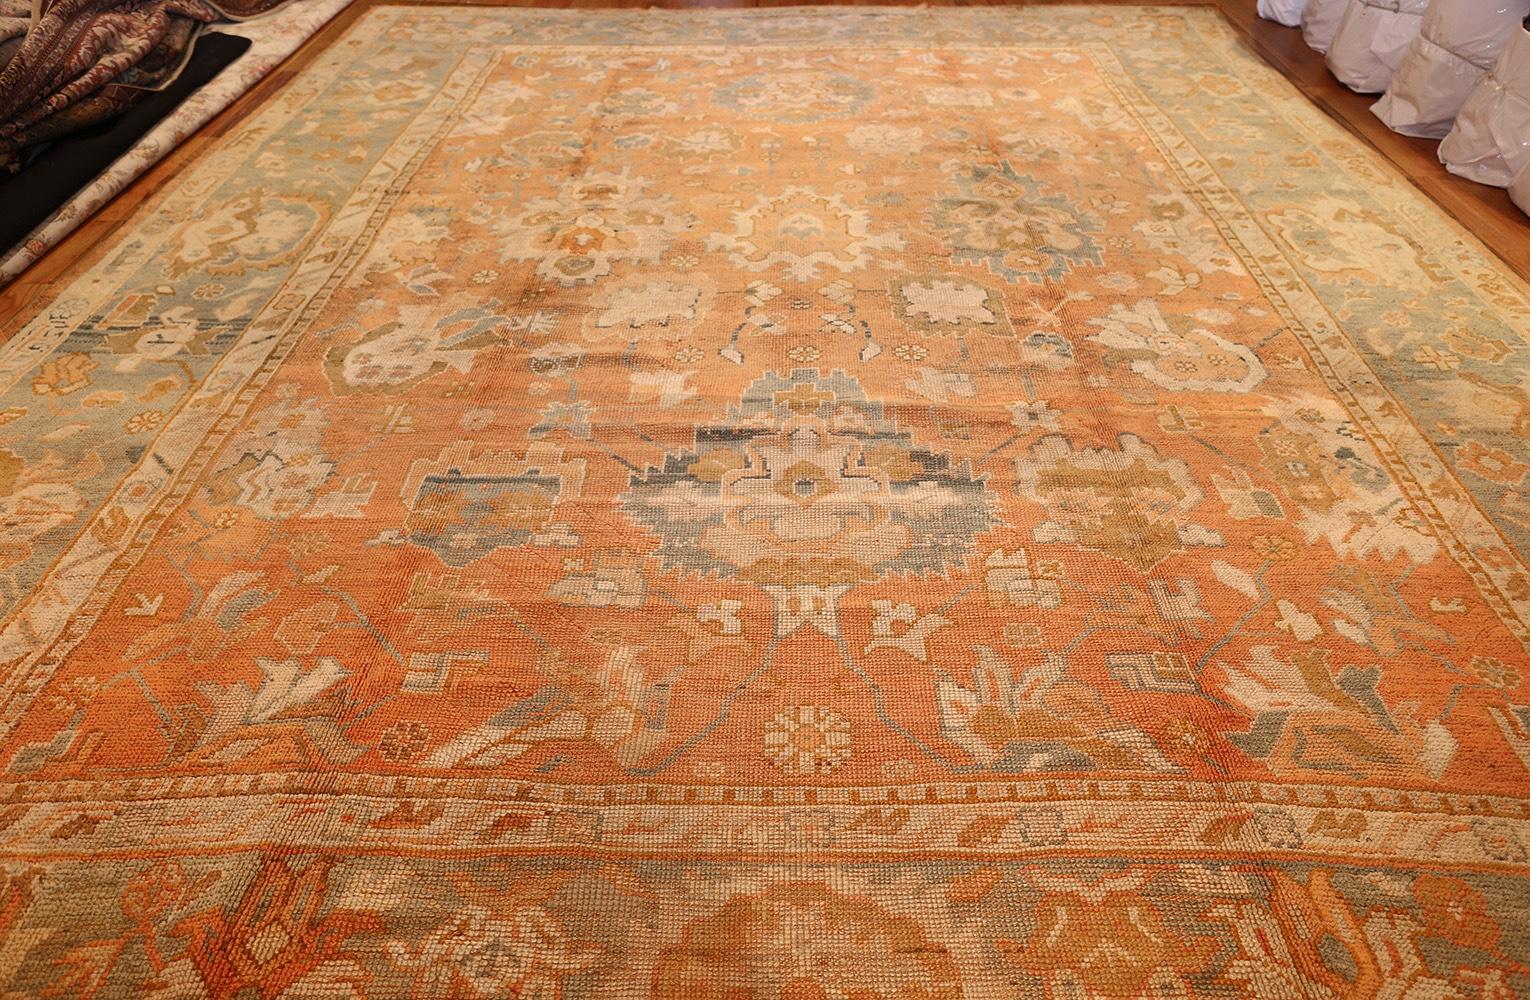 Ancien tapis turc Oushak, pays d'origine : Turquie, date circa early 20th century. Dimensions : 3,53 m x 4,44 m (11 ft. 7 in x 14 ft. 7 in)

Ce tapis est un merveilleux exemple de tissage classique Eleg avec de grands motifs rectilignes, des